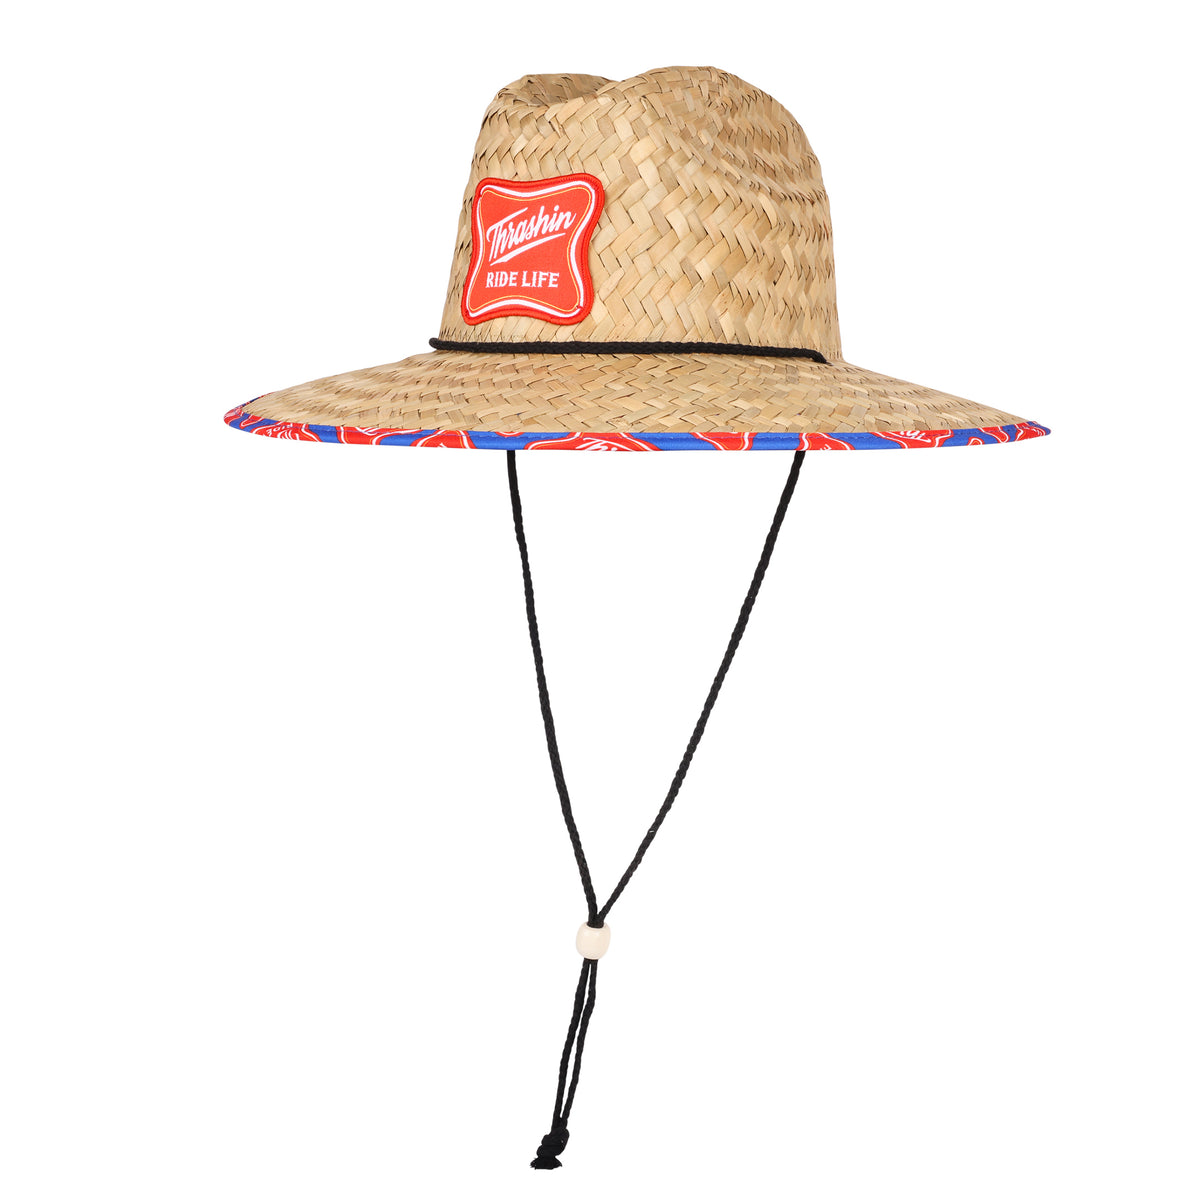 Ride Life - Sun Hat